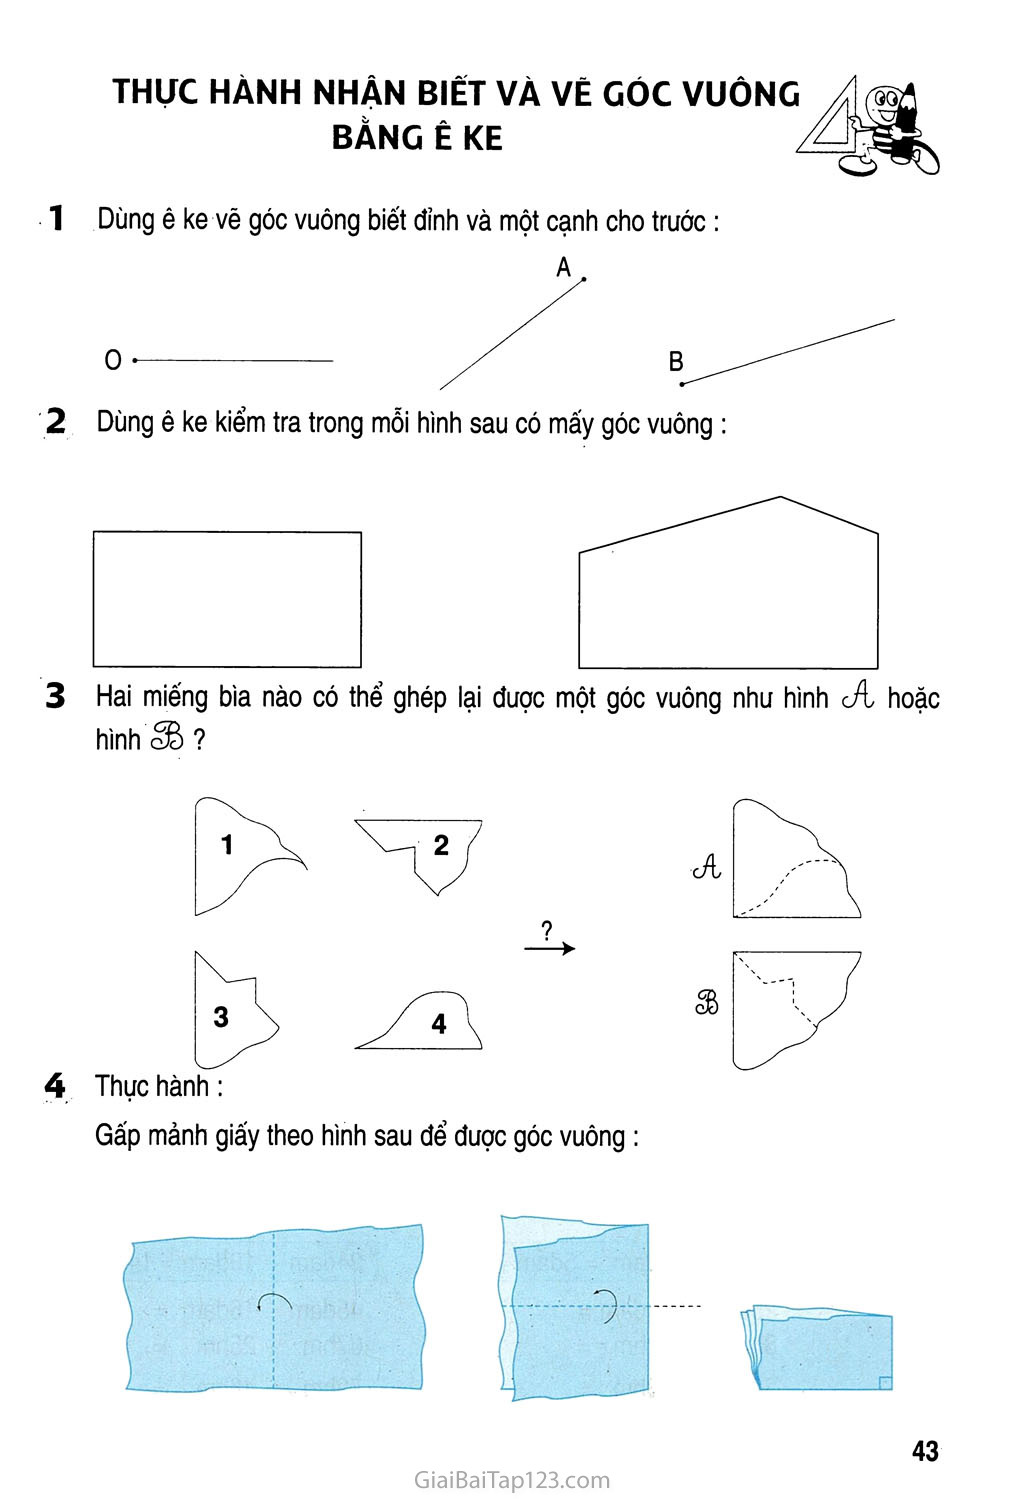 Thực hành nhận biết và vẽ các góc vuông bằng ê ke trang 1